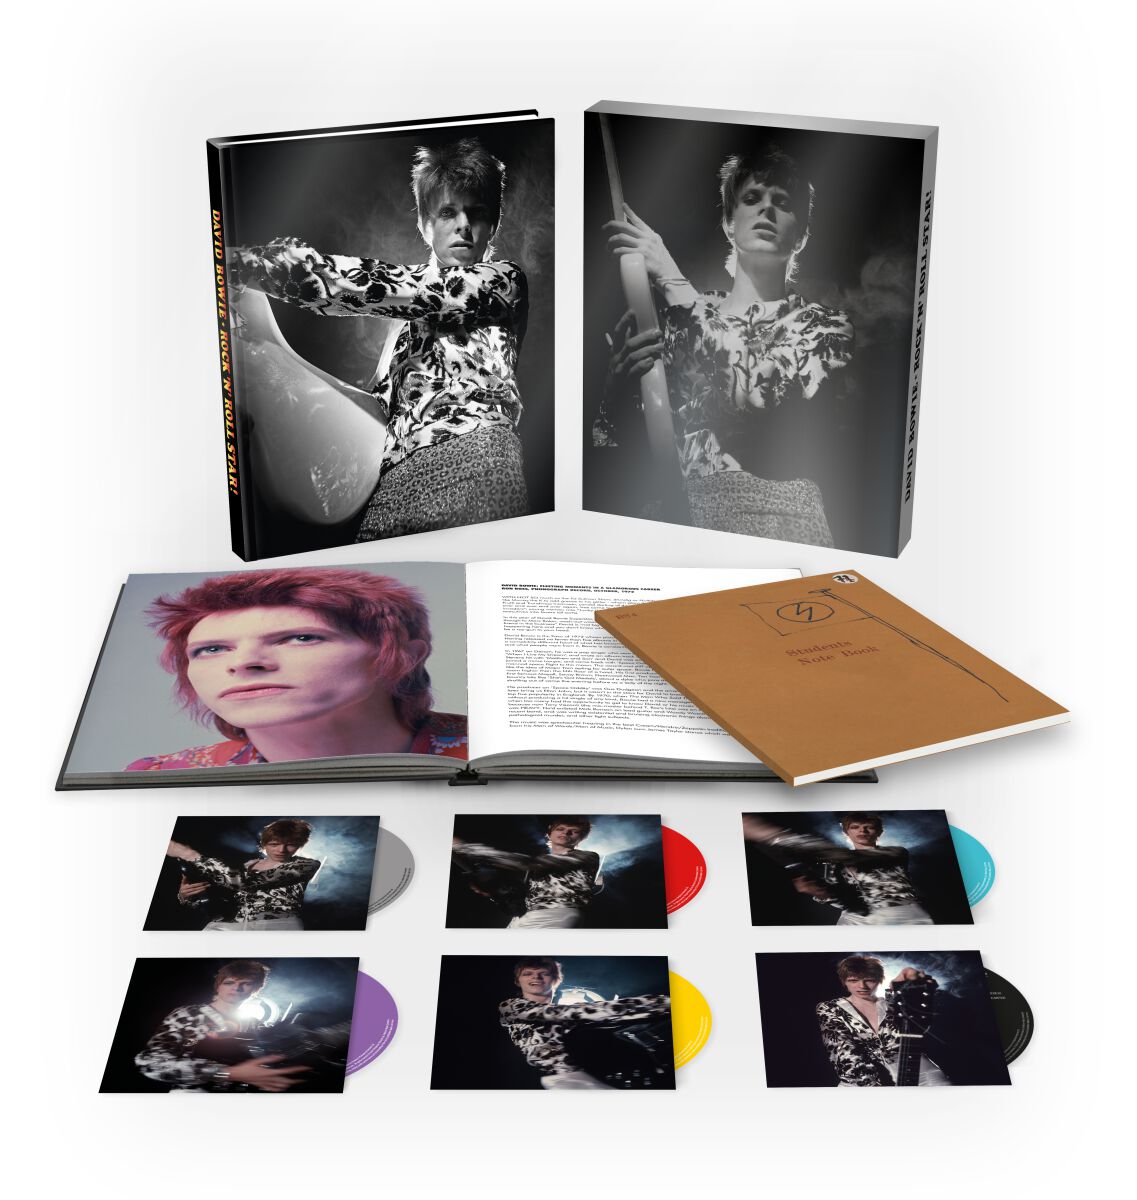 Rock `n` Roll star! von David Bowie - 5-CD & Blu-ray (Boxset, Limited Edition)